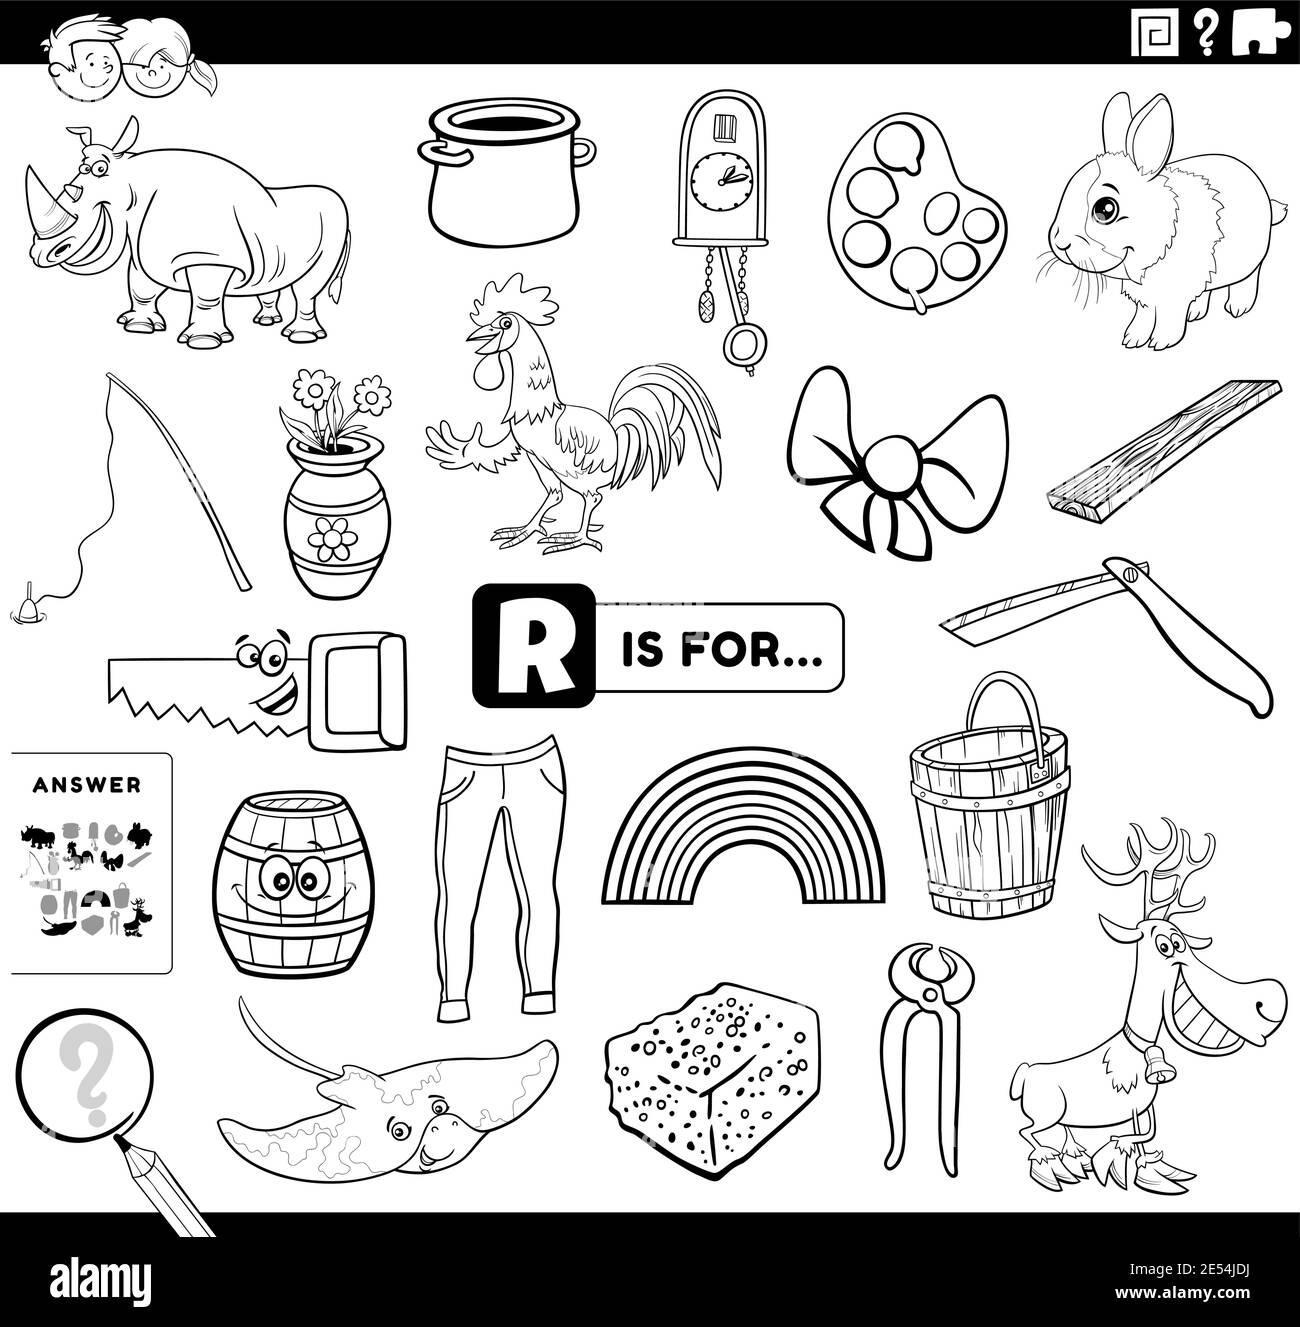 Dibujo de dibujos animados en blanco y negro de encontrar imágenes a partir  de Hoja de trabajo de tareas educativas de la letra R para niños con  objetos y. cómic Imagen Vector